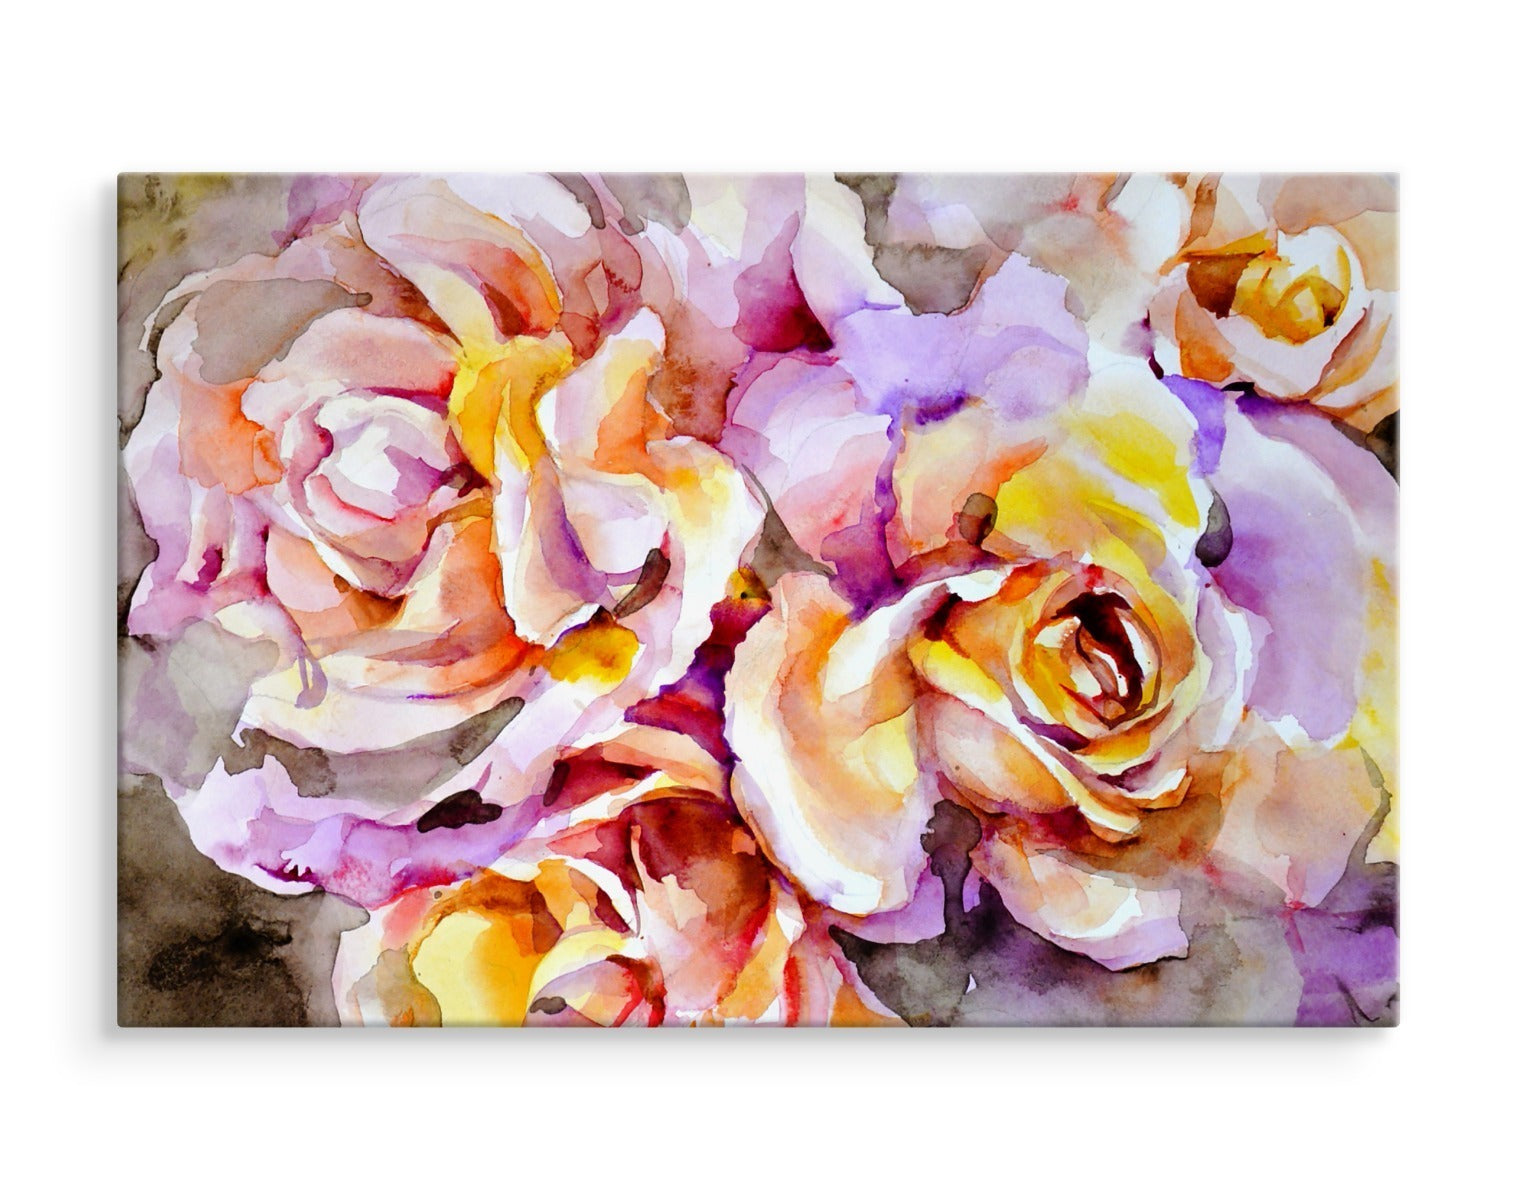 Fargerike roseblomster malt med akvarell